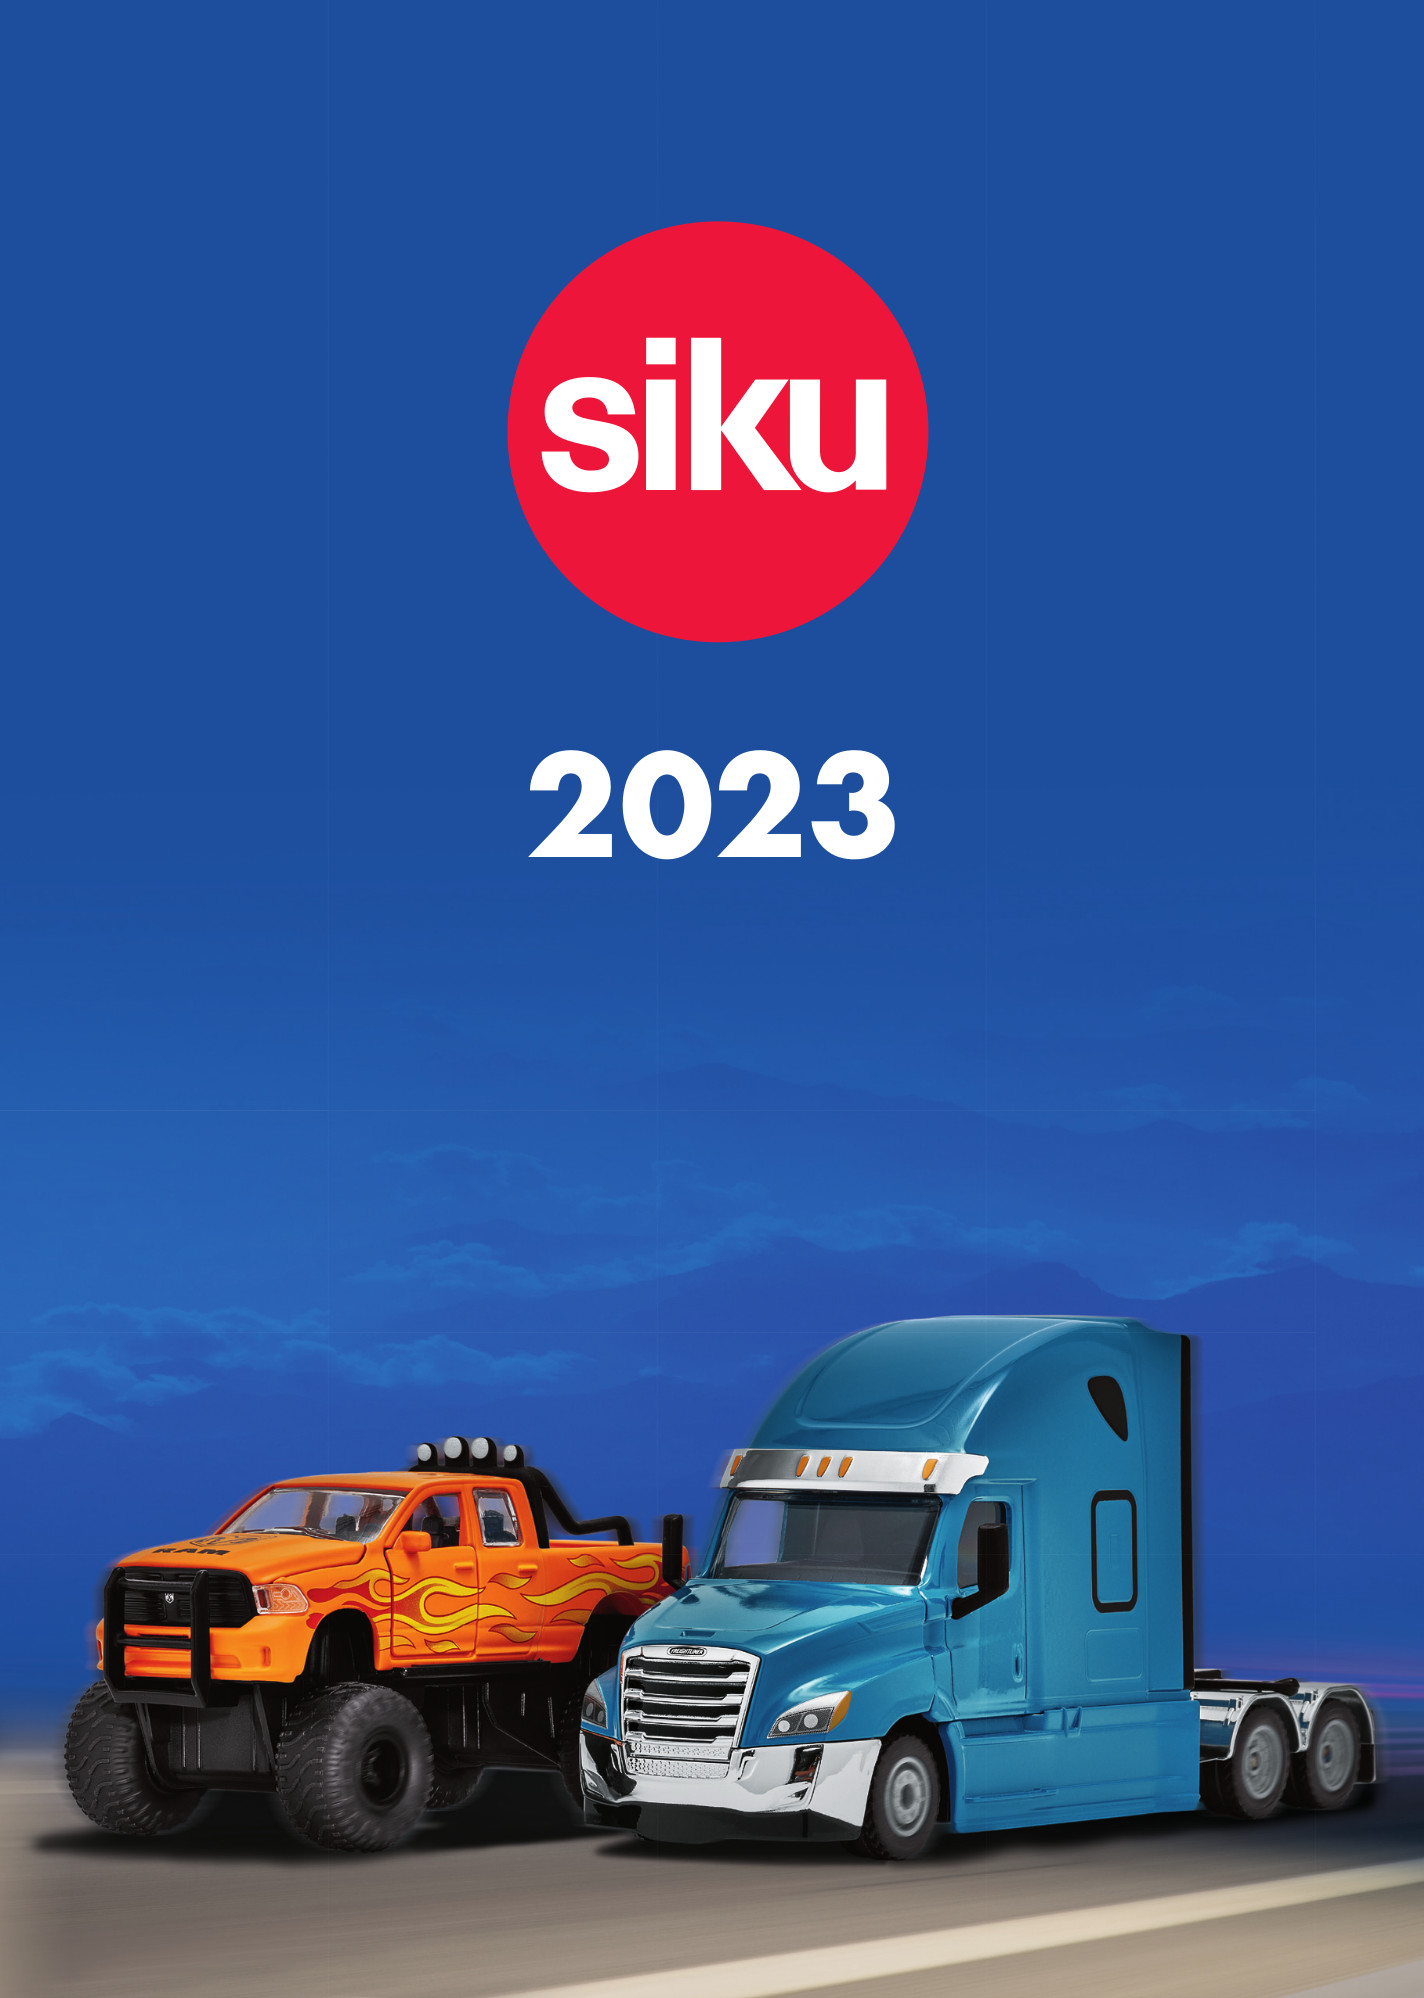 Catalogue Siku 2023 - Les nouveautés 2023 Siku à découvrir